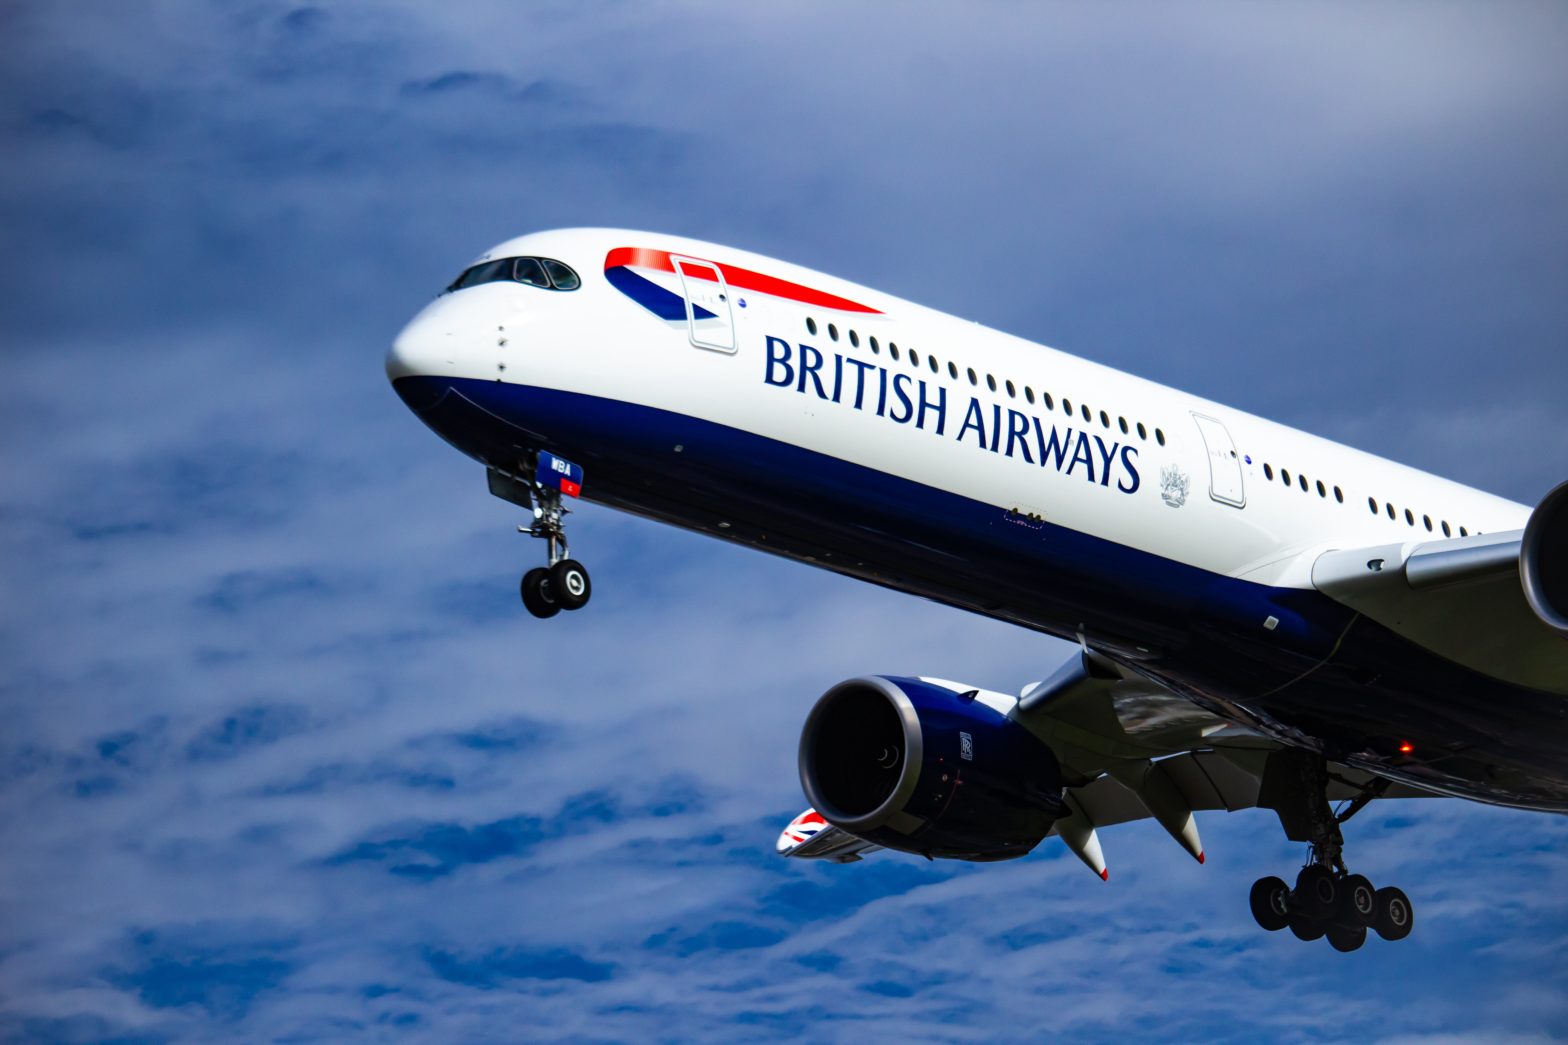 Passenger Poops On Floor Of British Airways